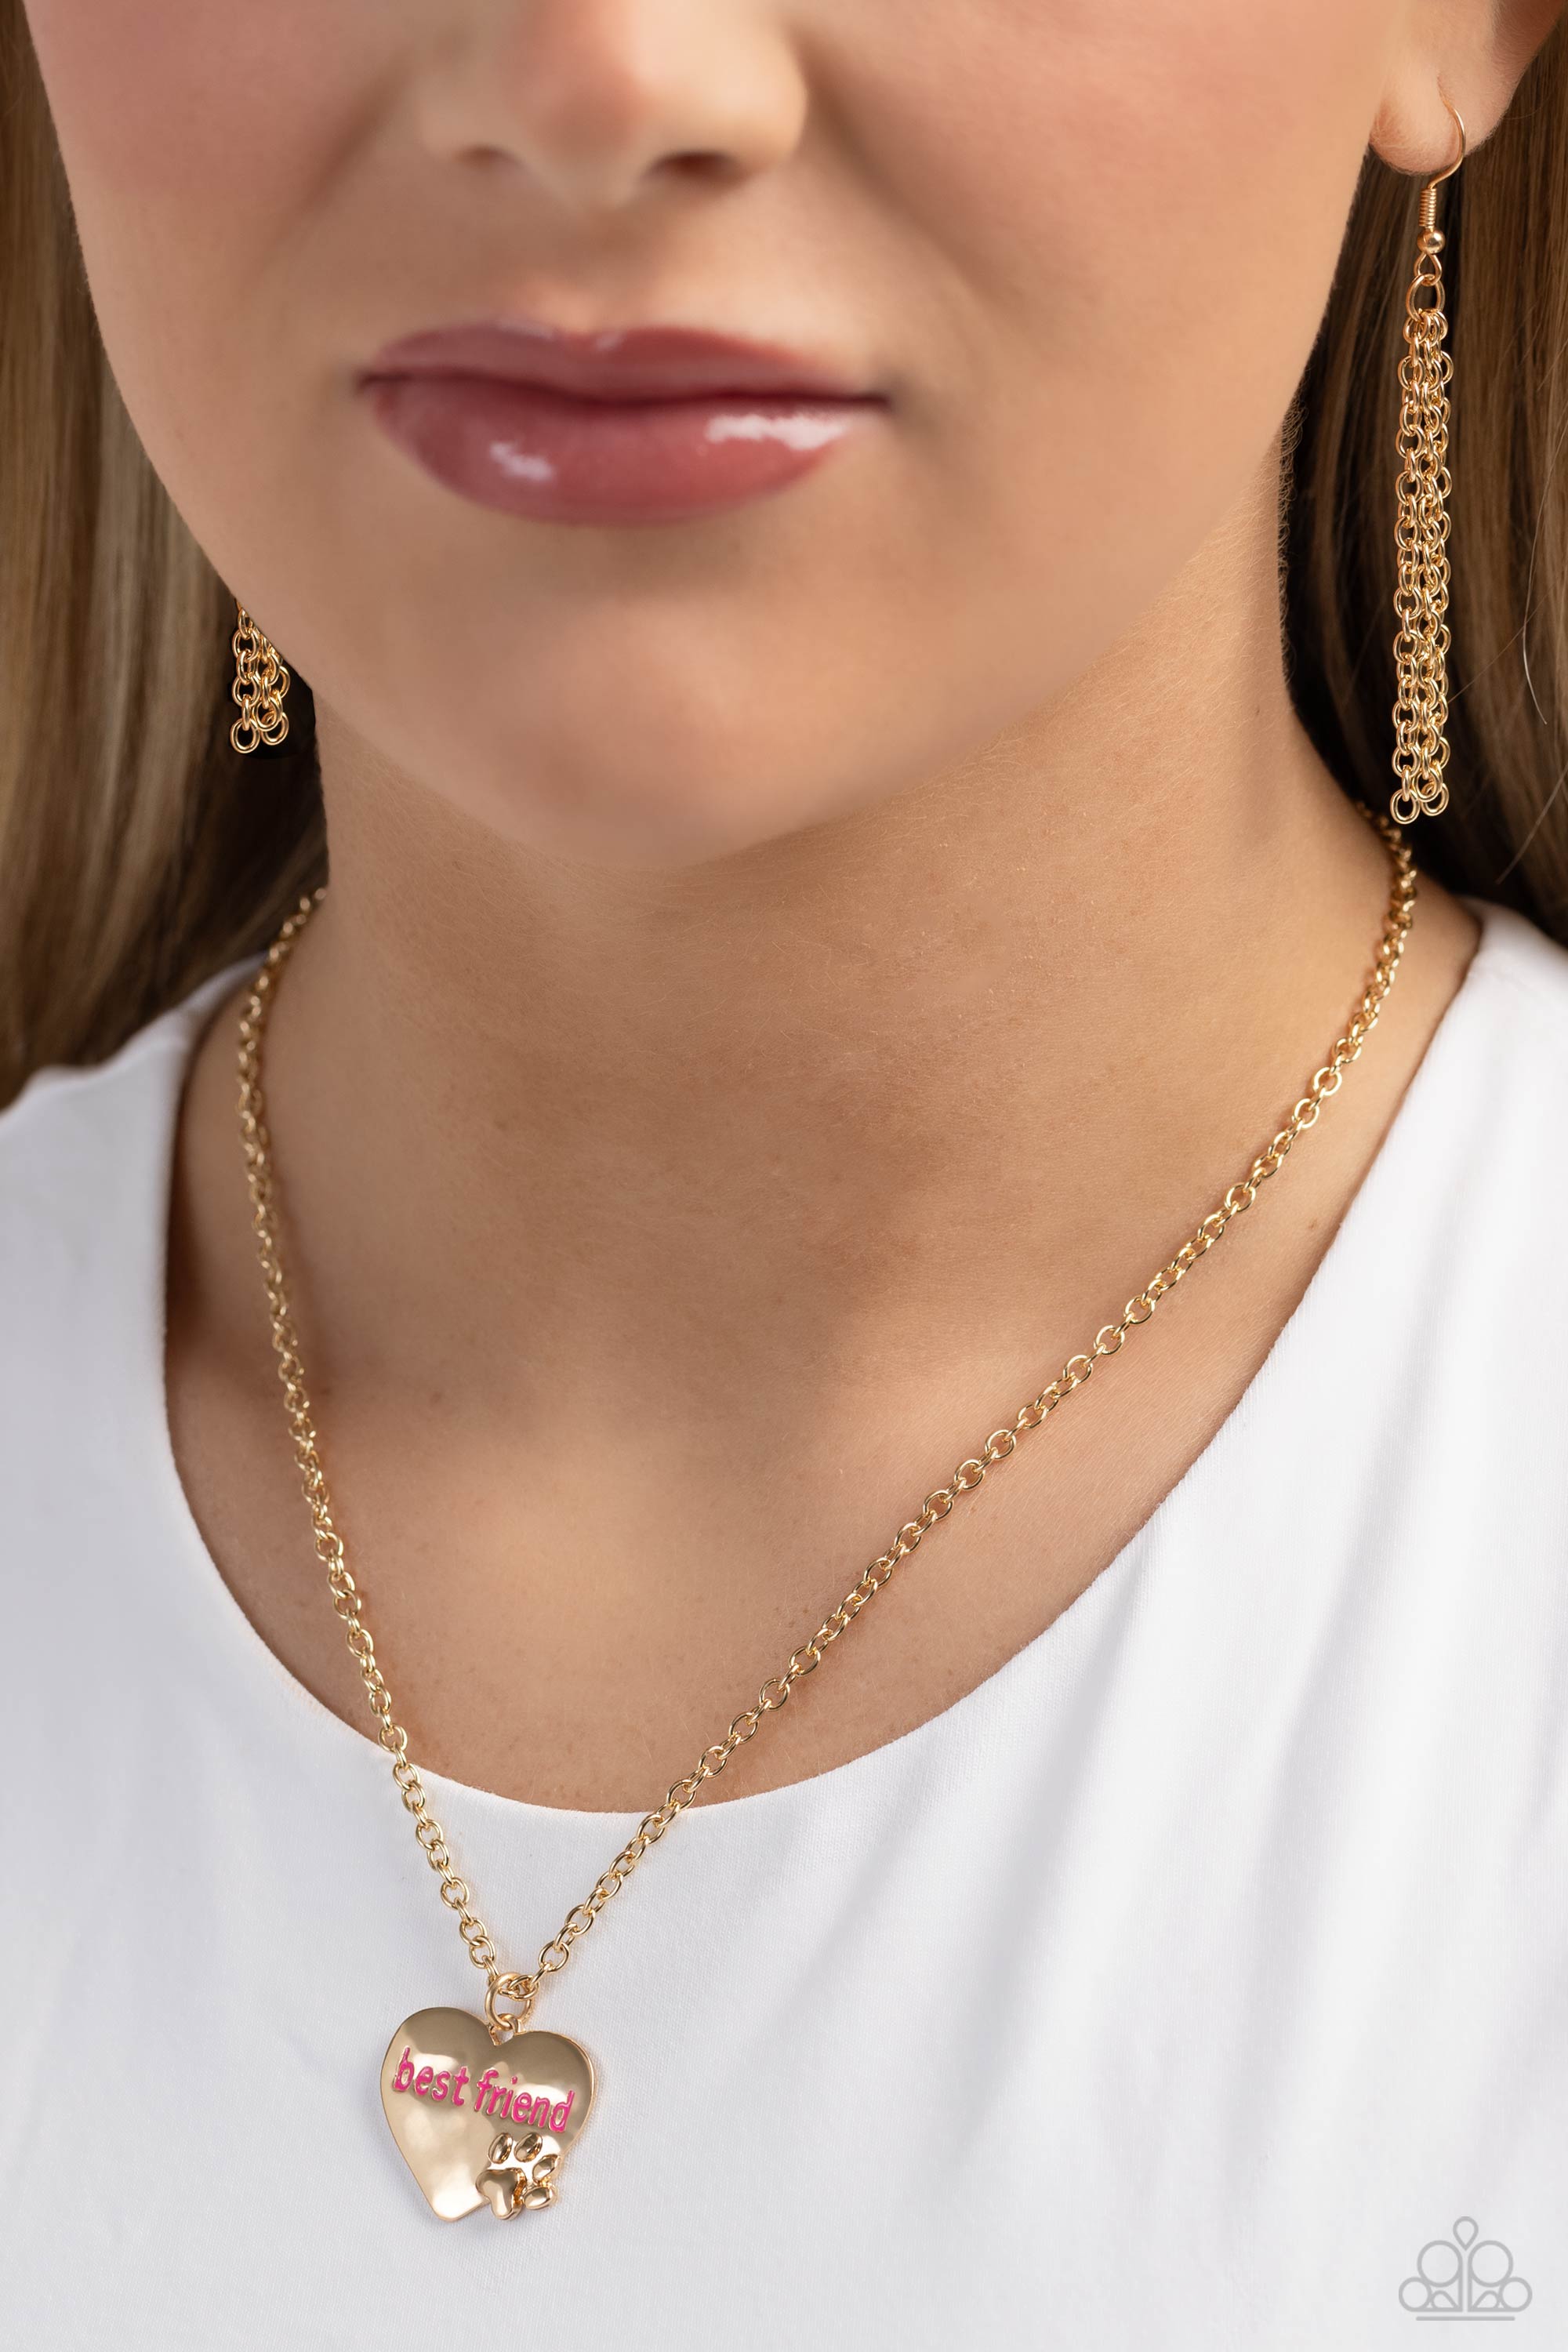 Little Crystal Paw Print Necklace (GOLD OR SILVER) - FENNO FASHION, LLC